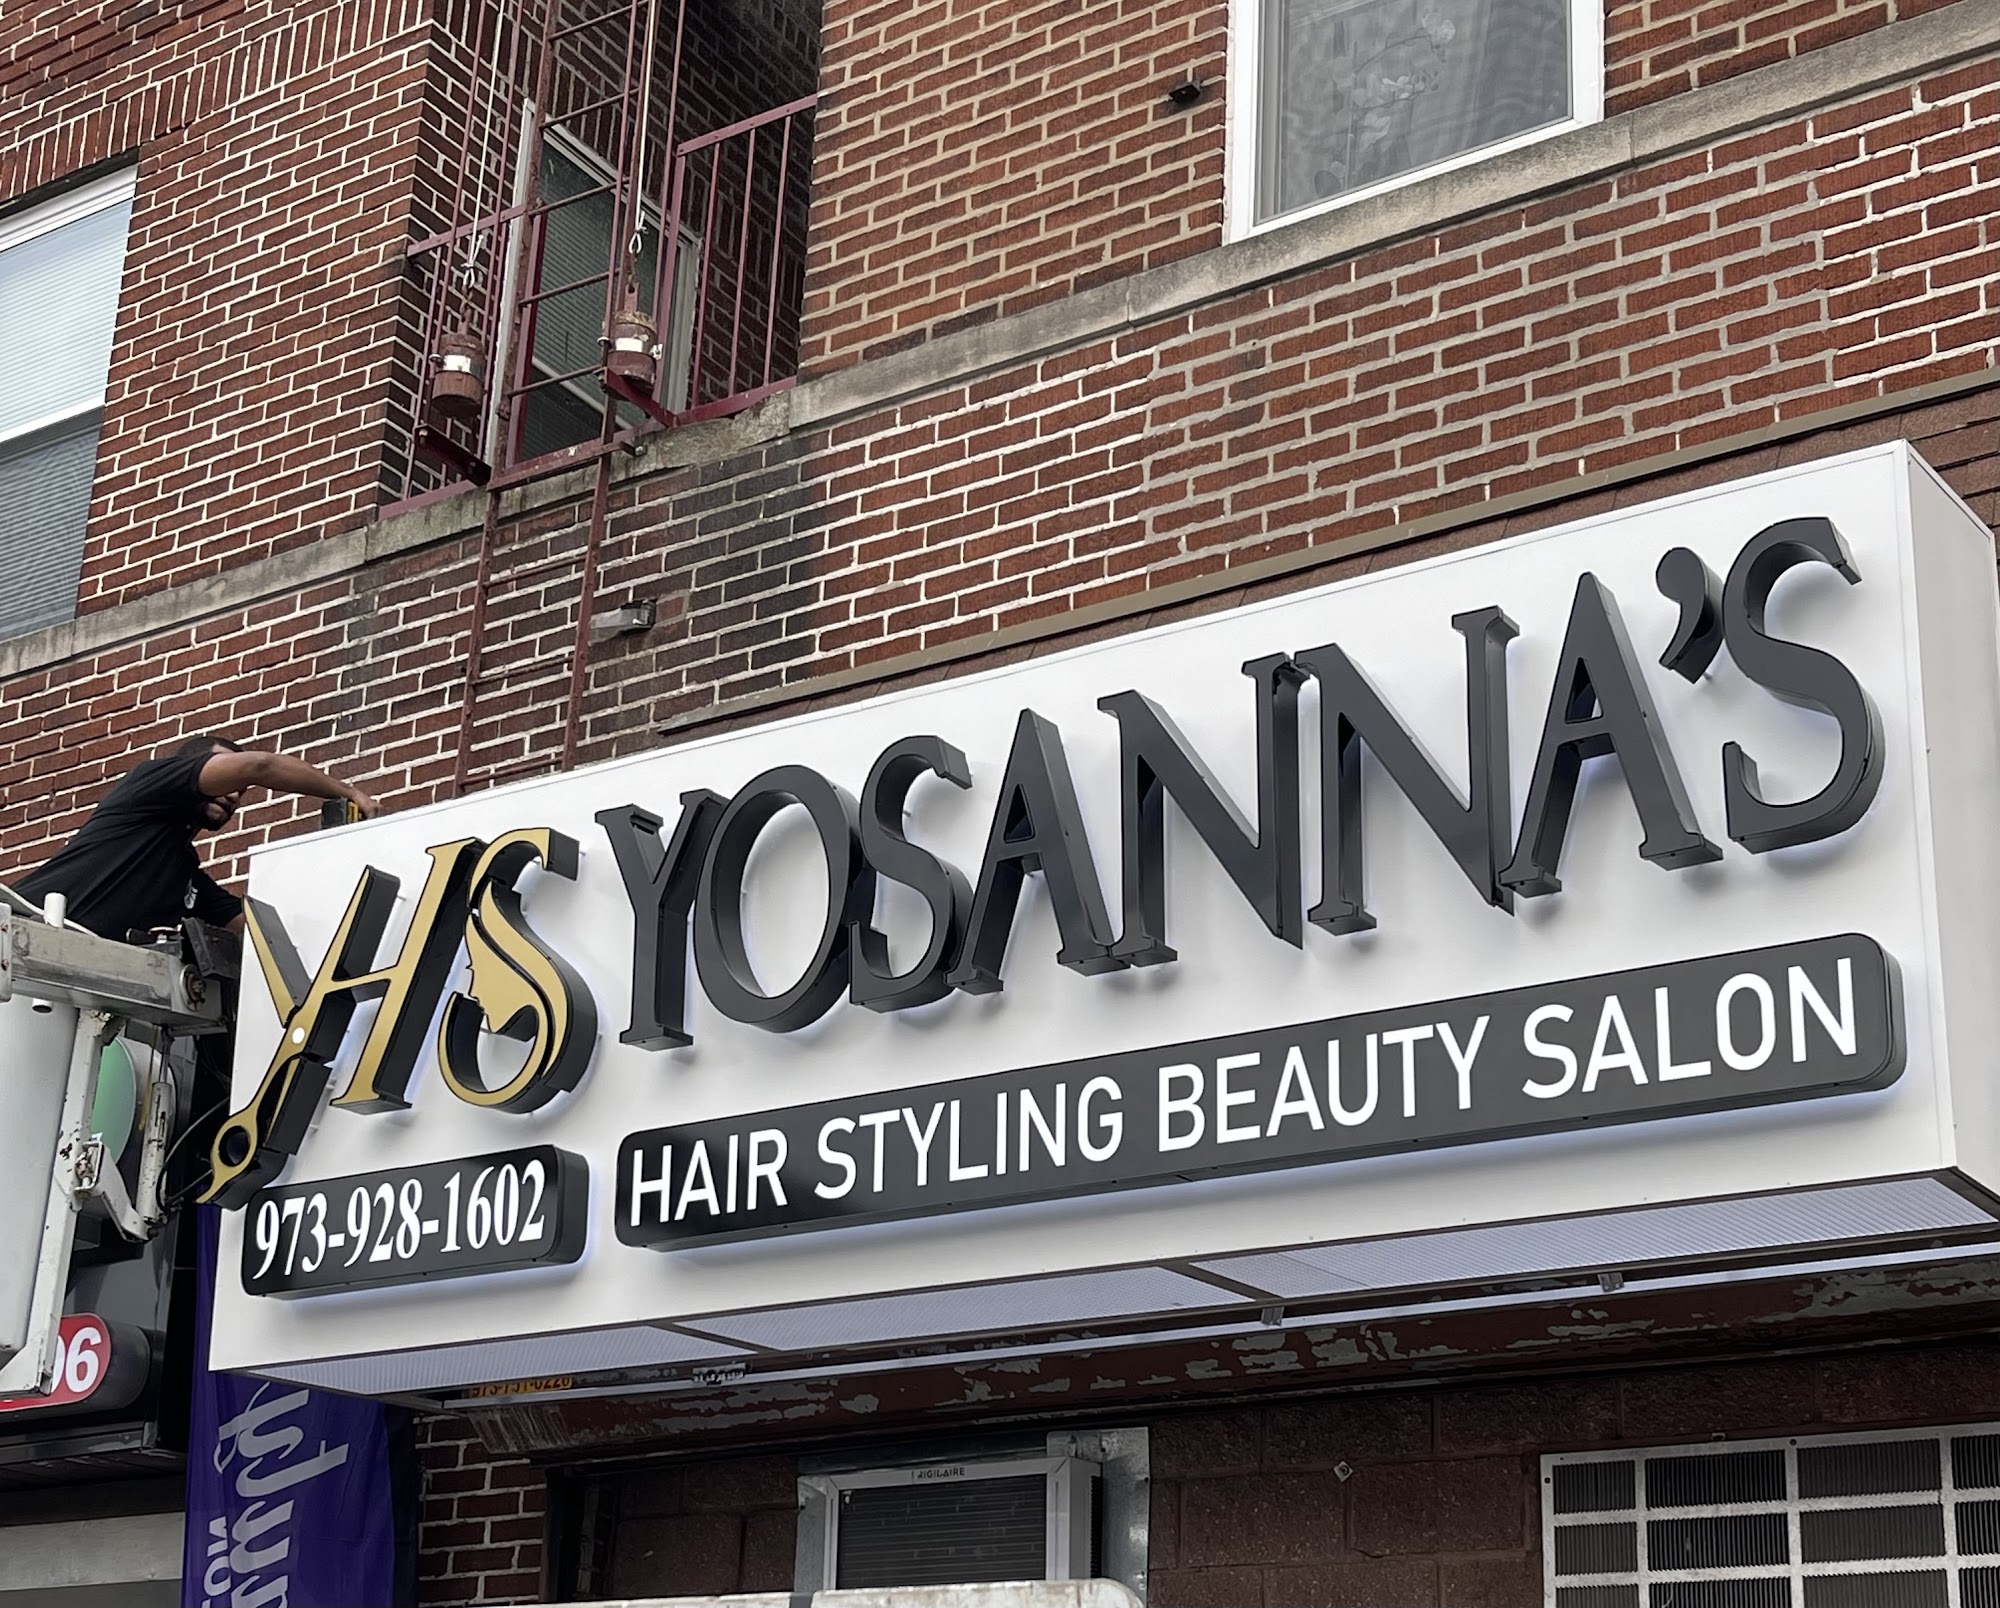 Yosanna’s Hair Styling Beauty Salon